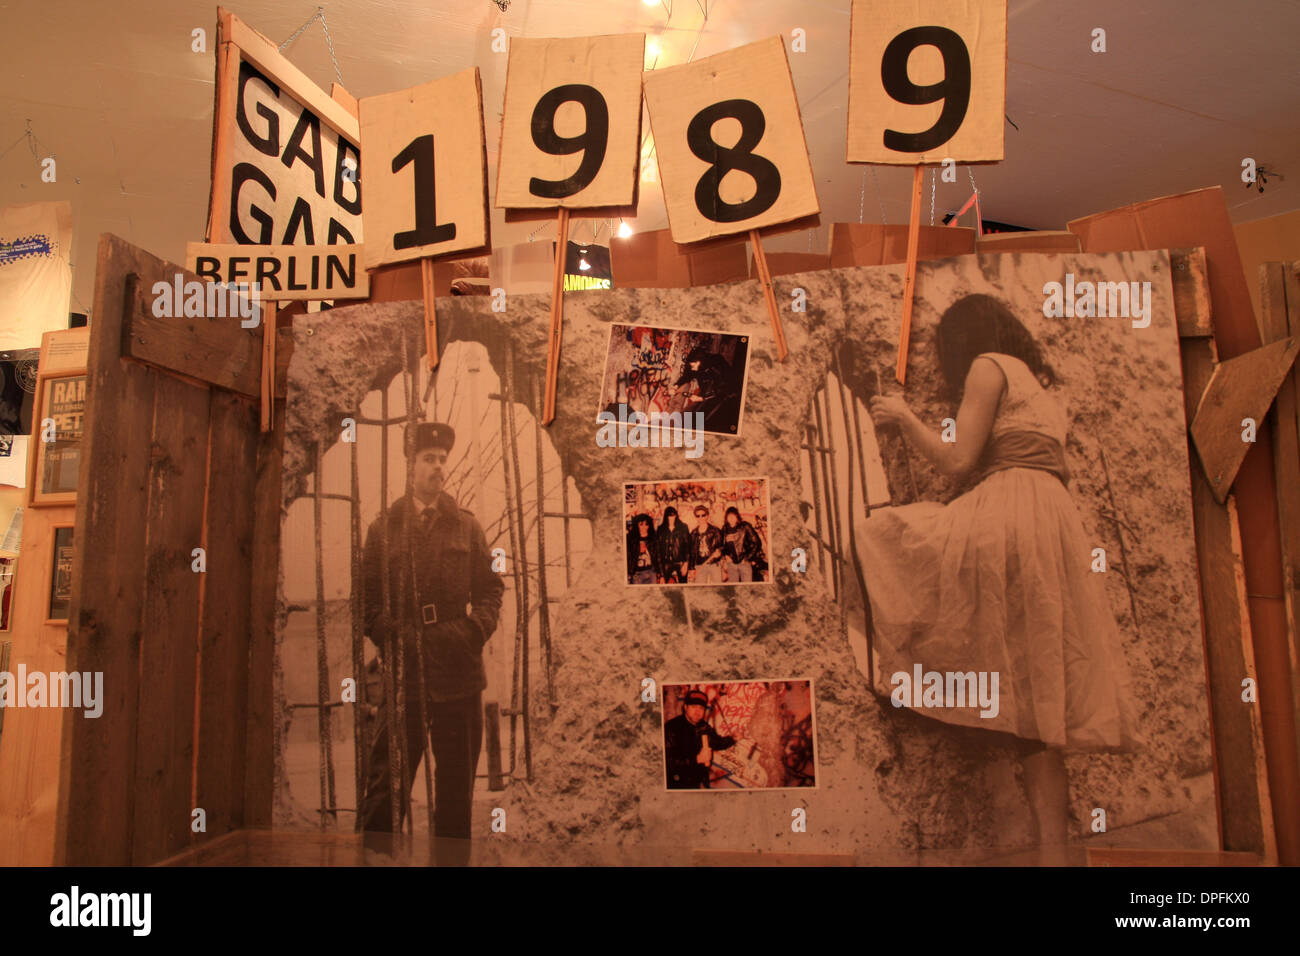 Ramones museum, Berlin Stock Photo